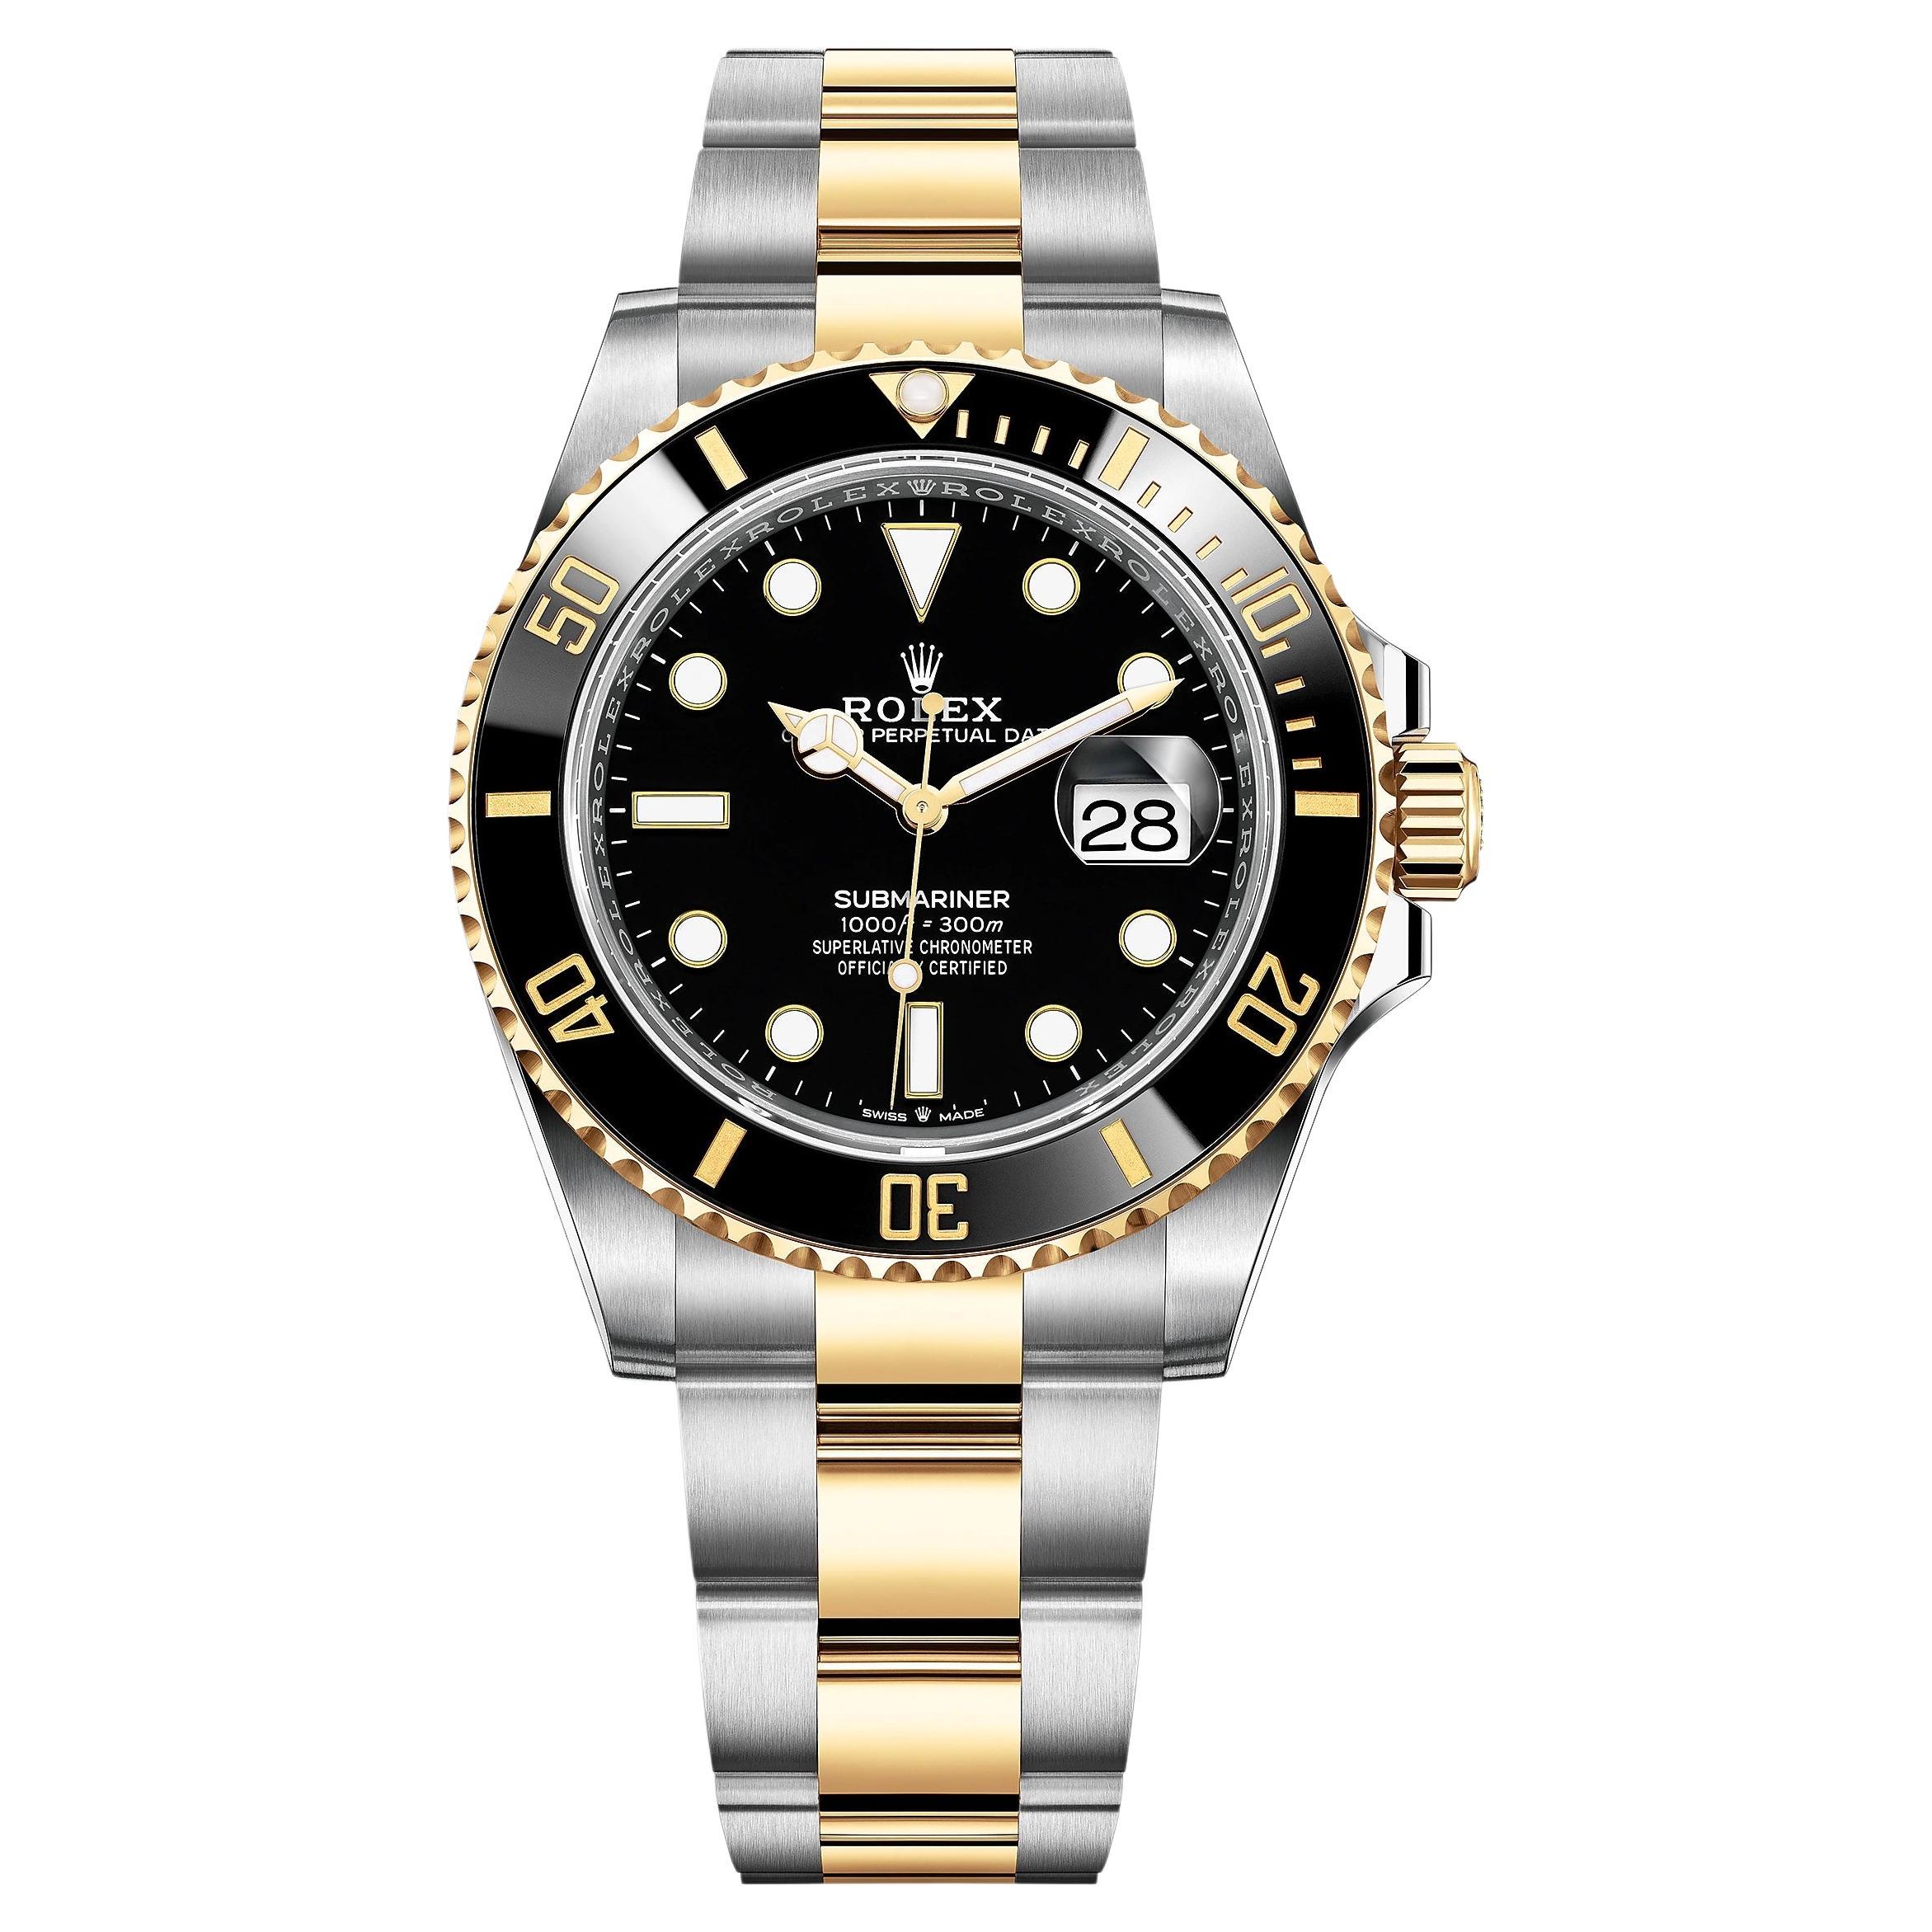 Montre Rolex Submariner Date, 18 carats YG/SS, cadran noir, réf. 126613LN, non portée, 2022 en vente